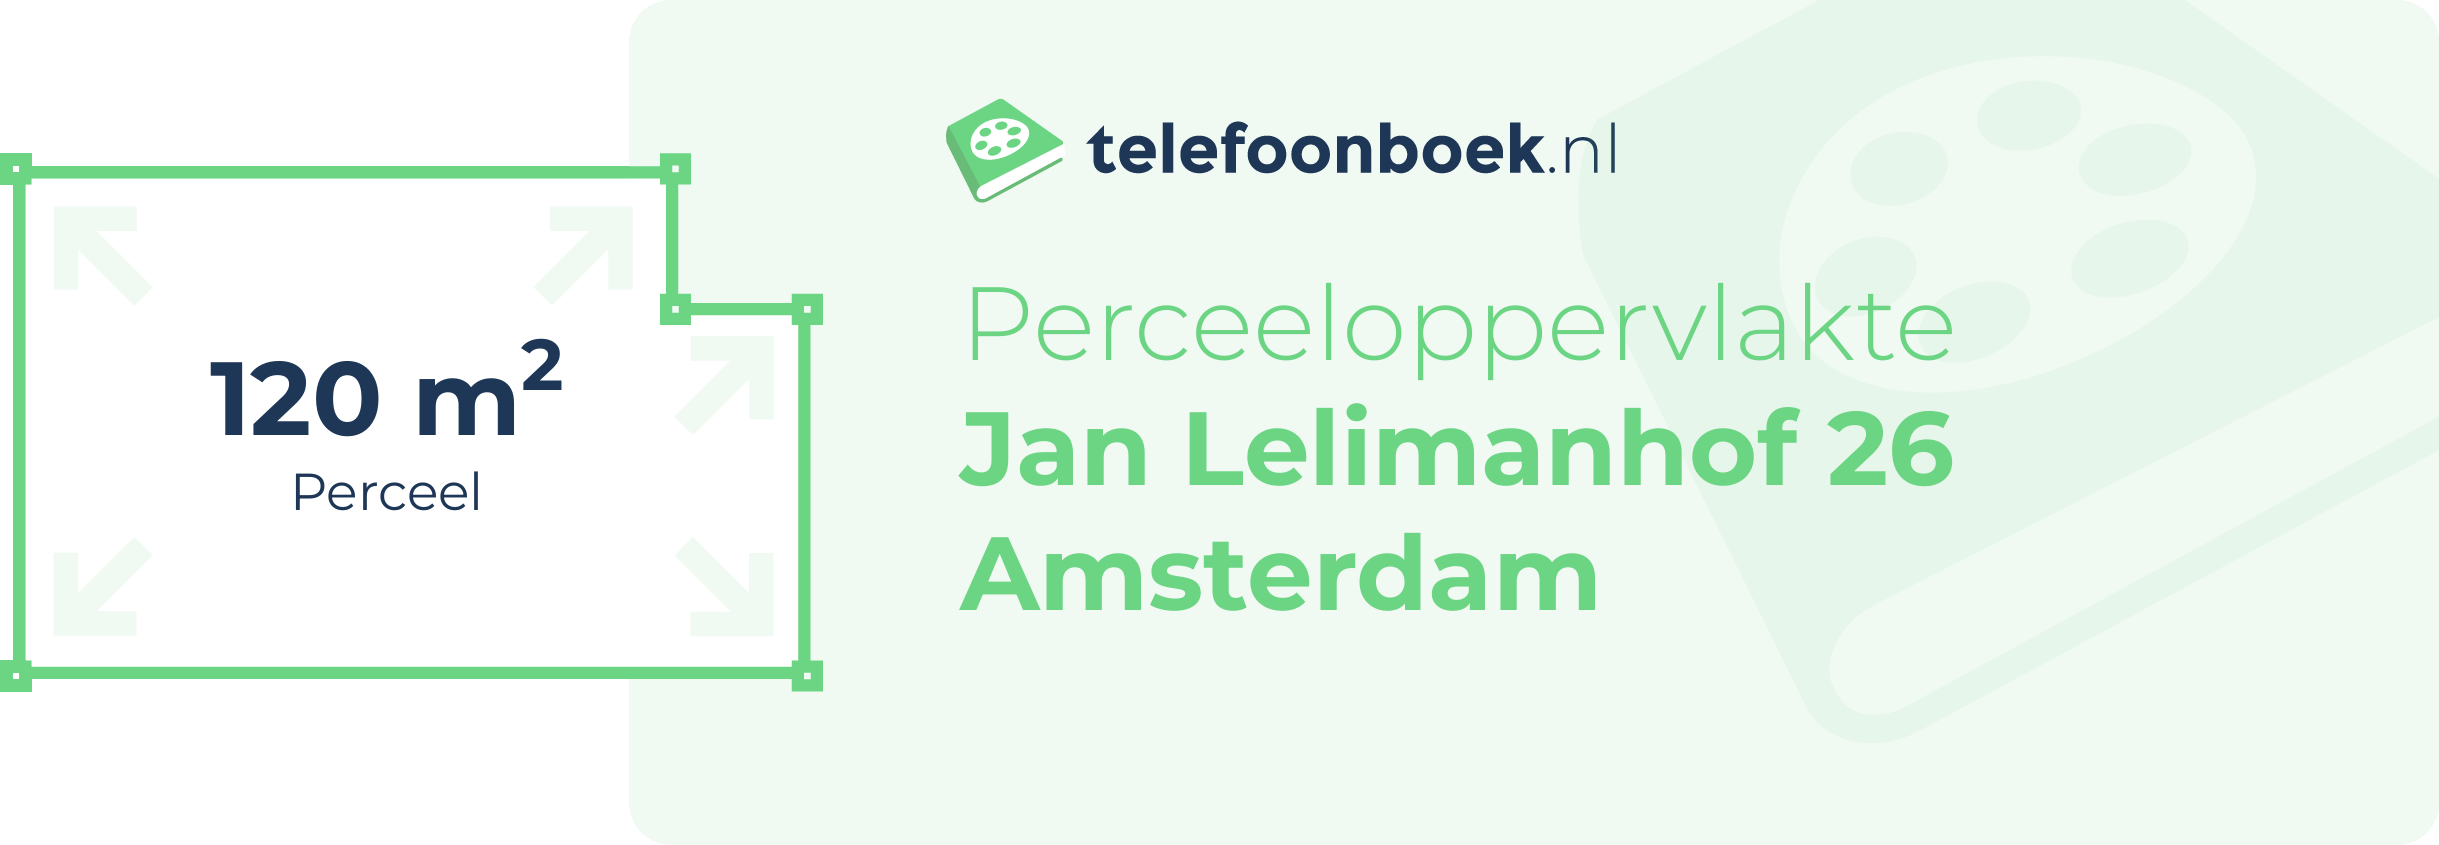 Perceeloppervlakte Jan Lelimanhof 26 Amsterdam